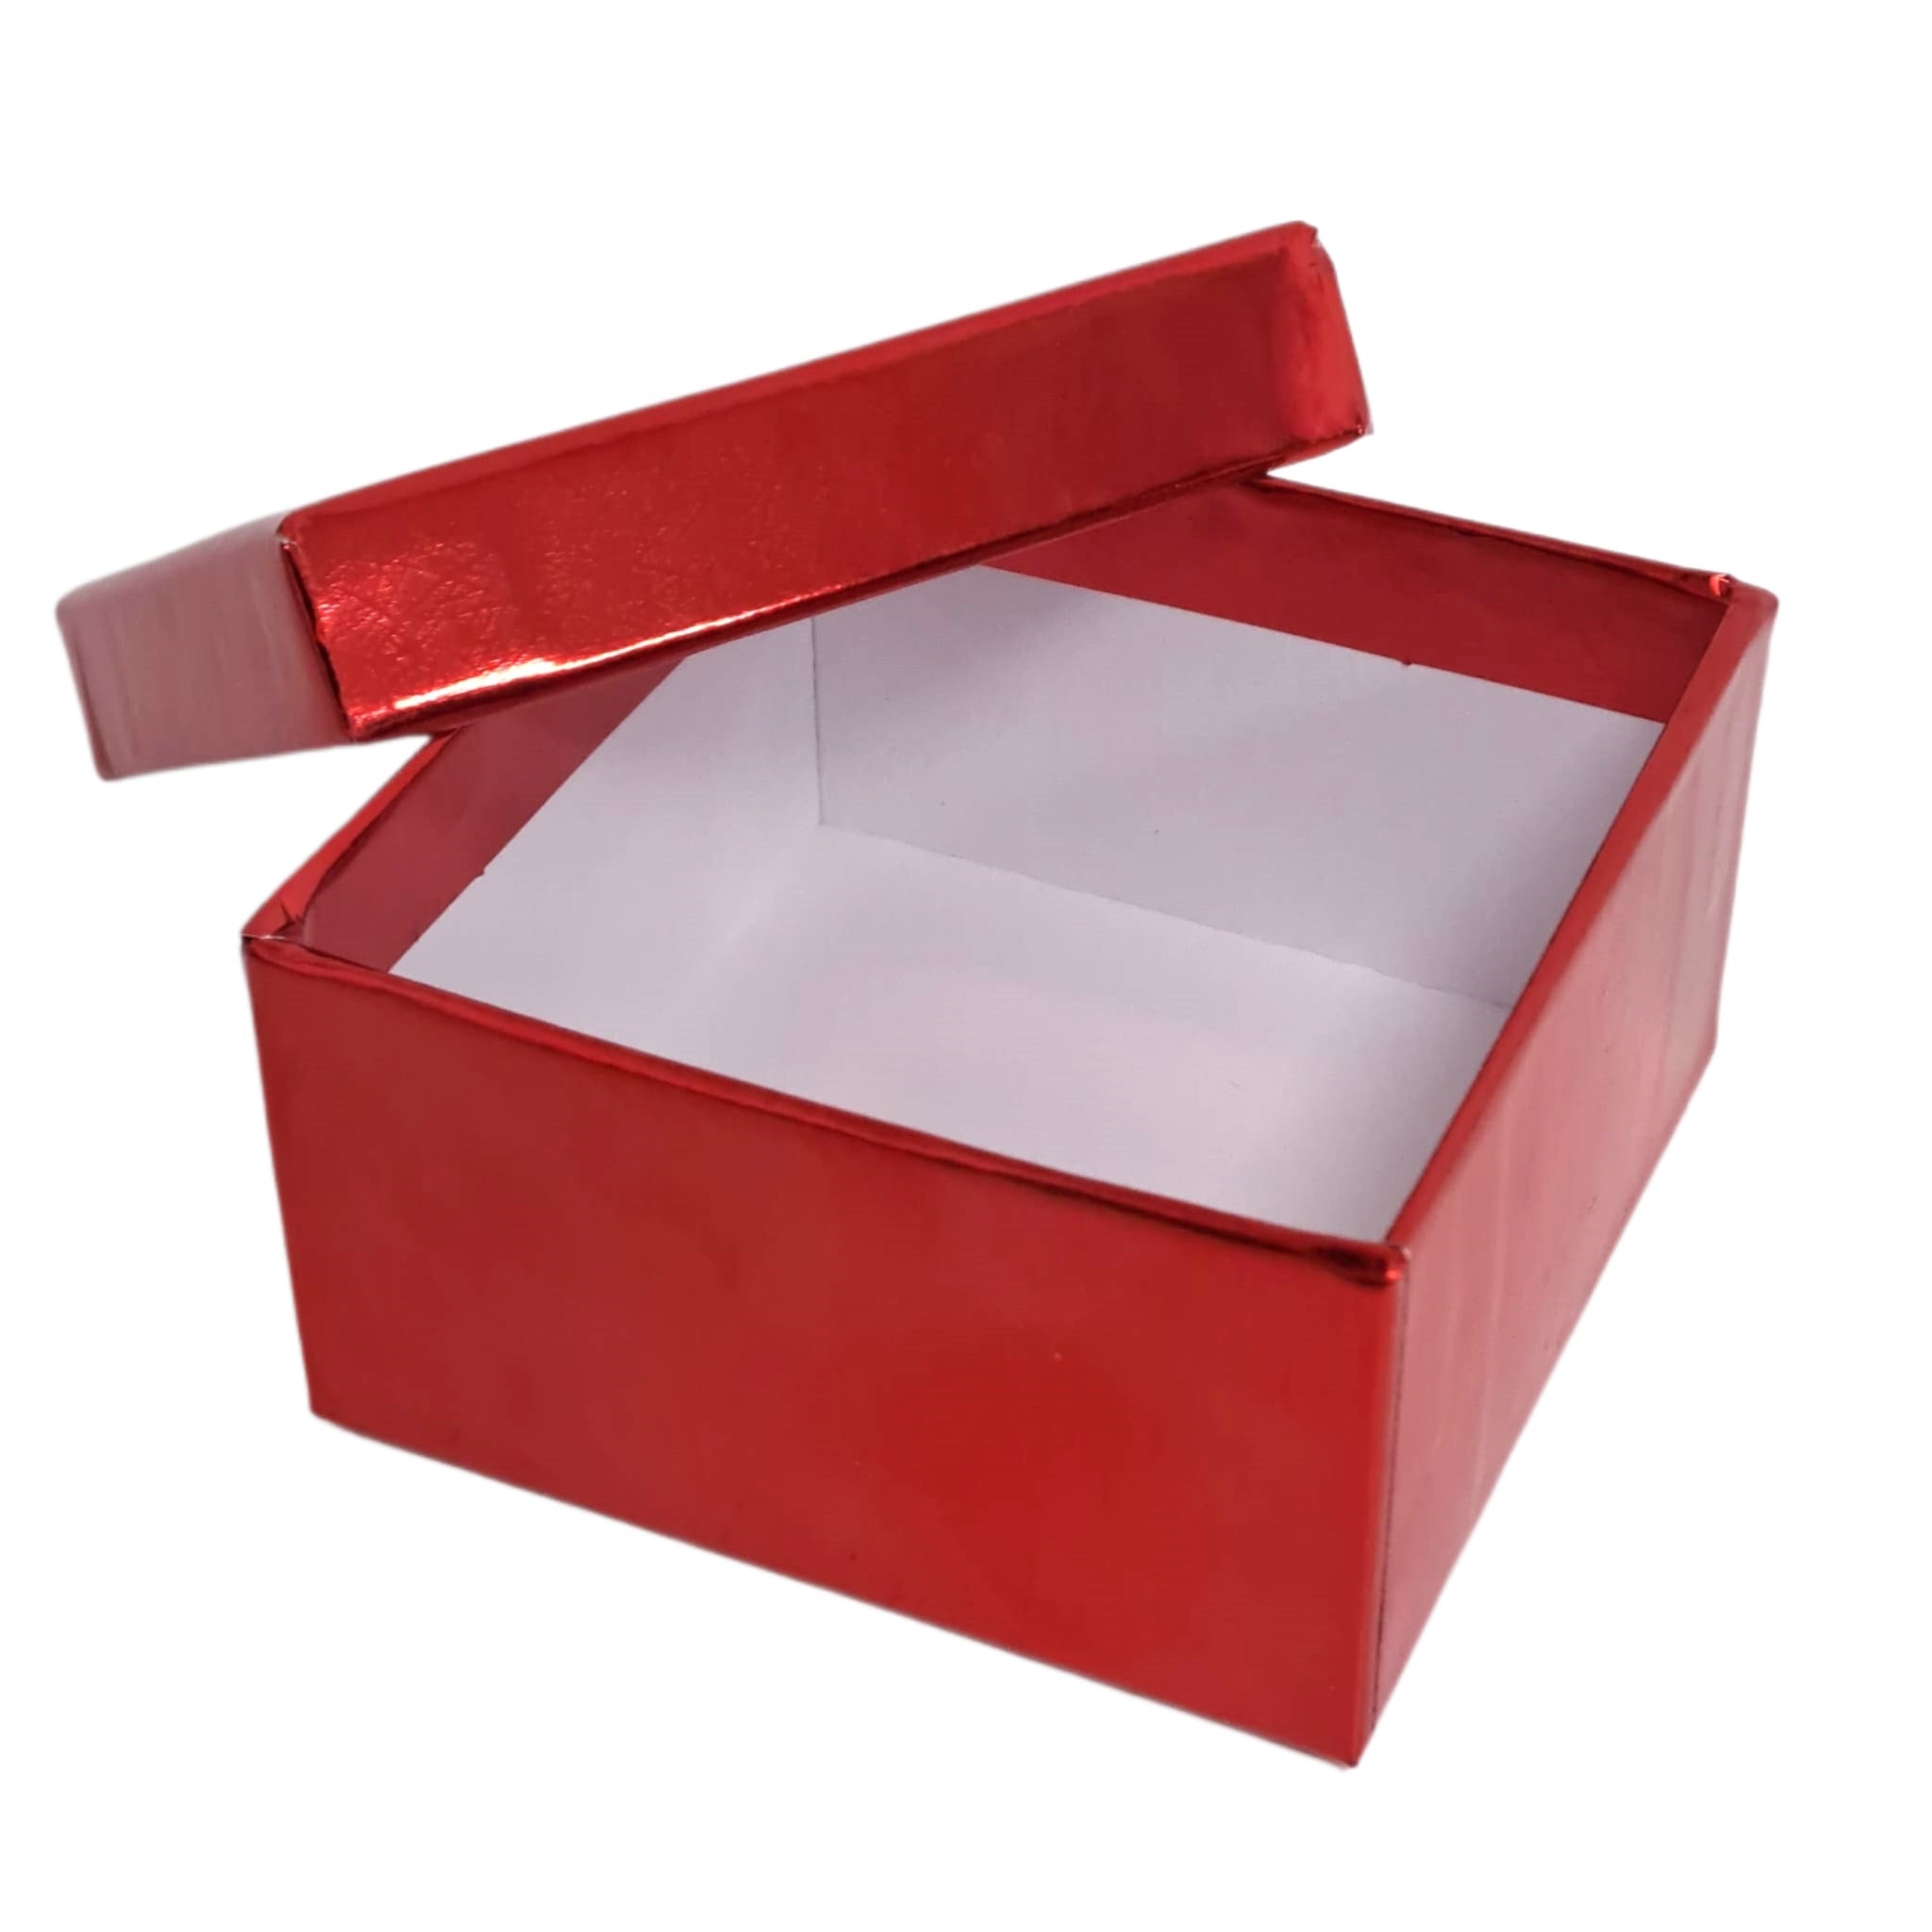 Cutie pentru cadou, rosie, cu capac, 8.5x8.5x4.5cm